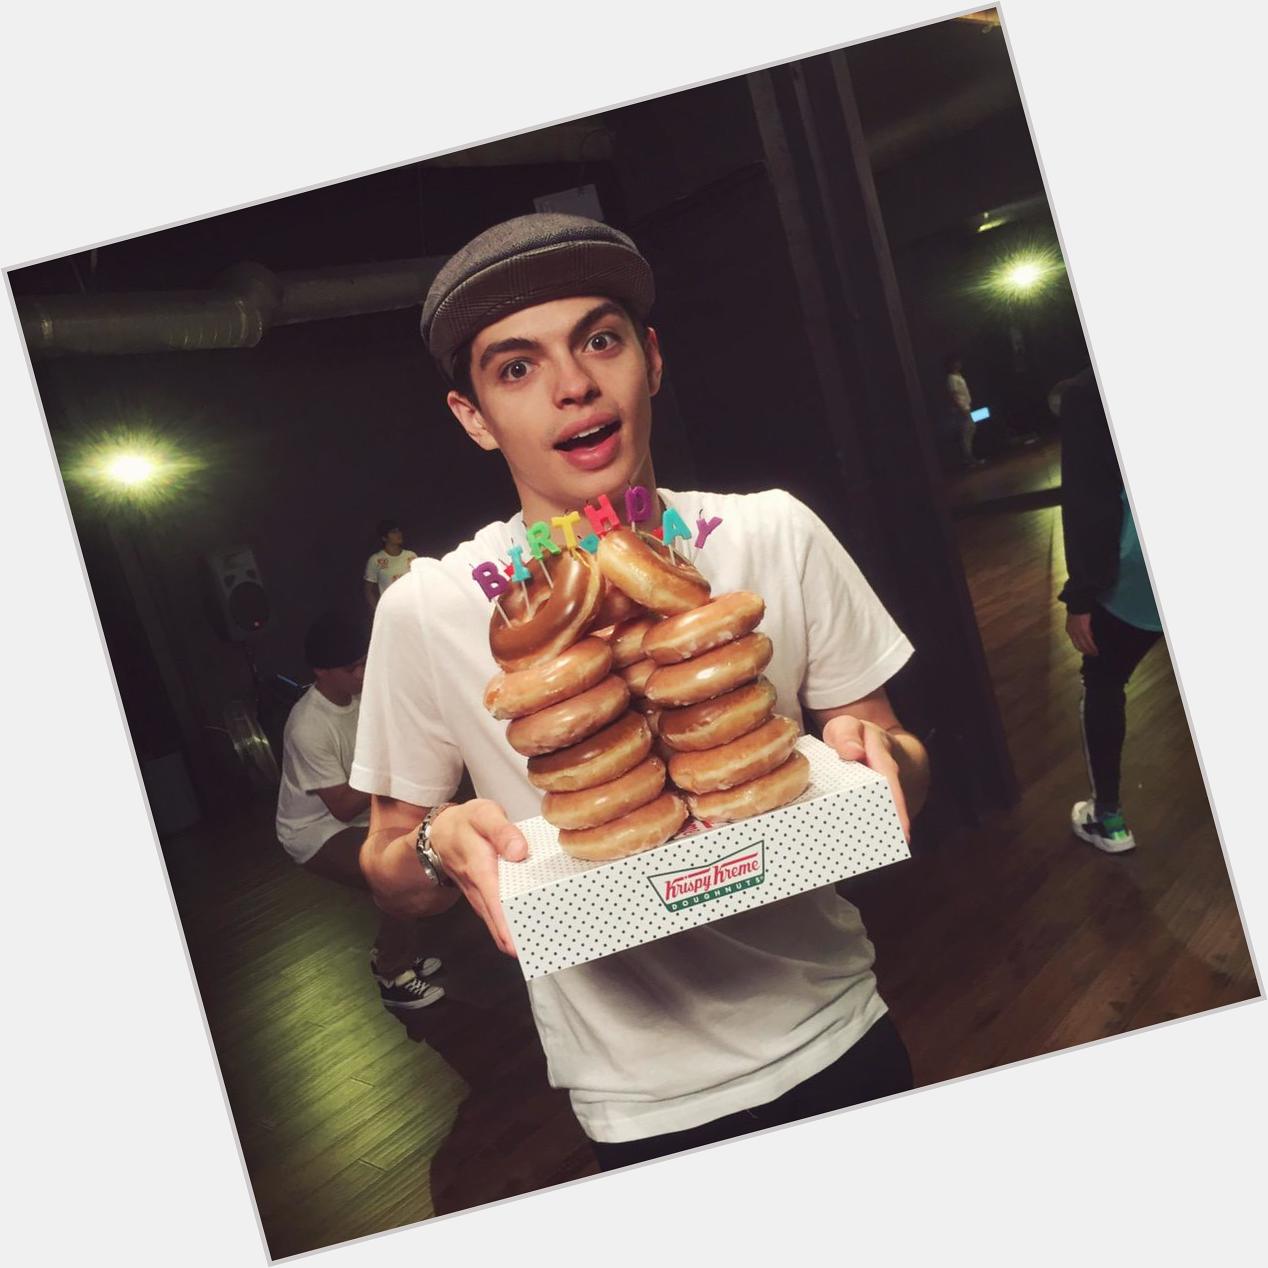 Happy birthday handsome boy  \" my \"I\m 22, and I have a Krispy Kreme birthday cake.\" face. 